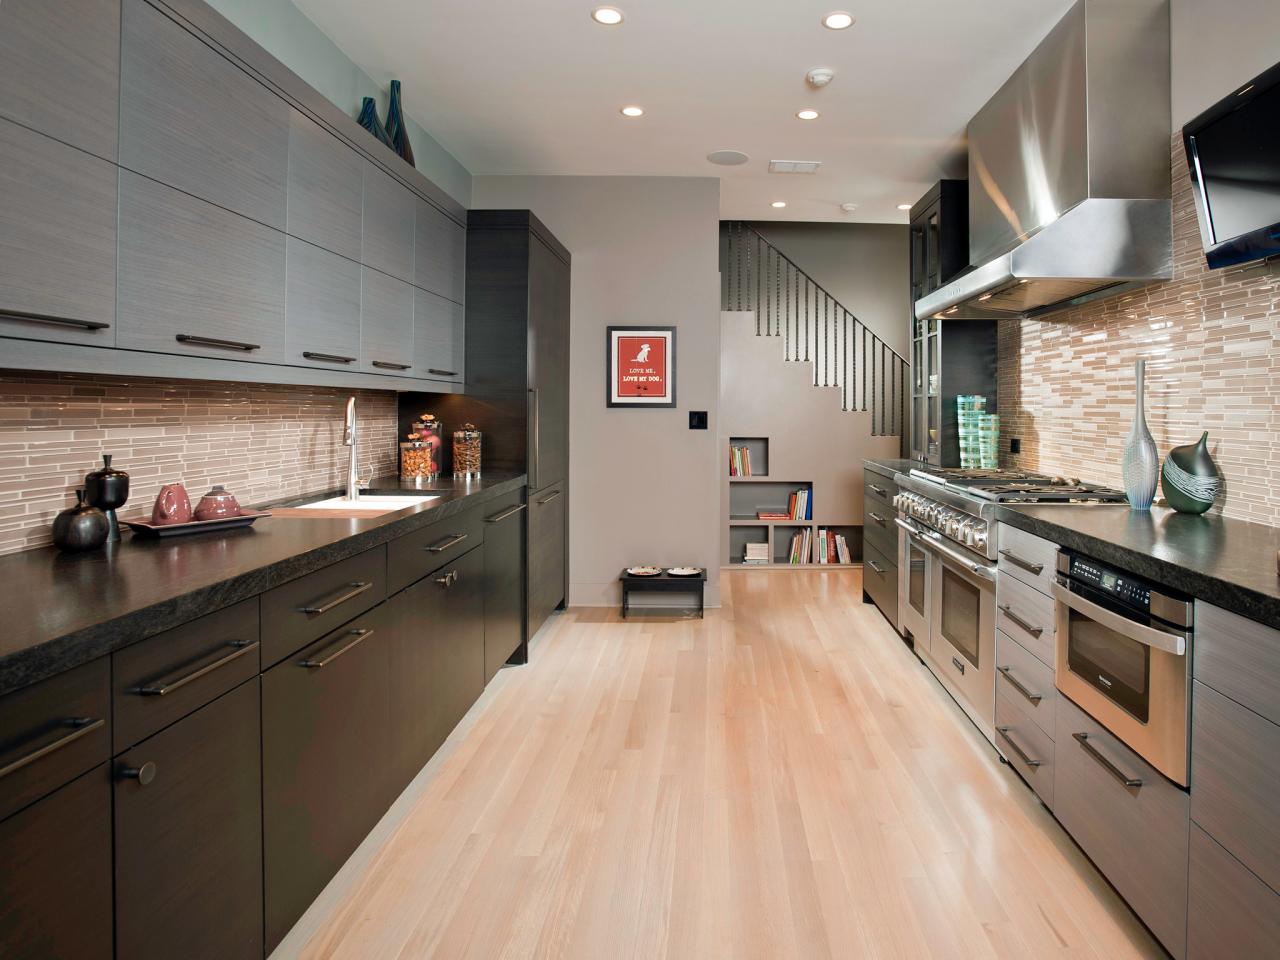 floor plan galley kitchen layout